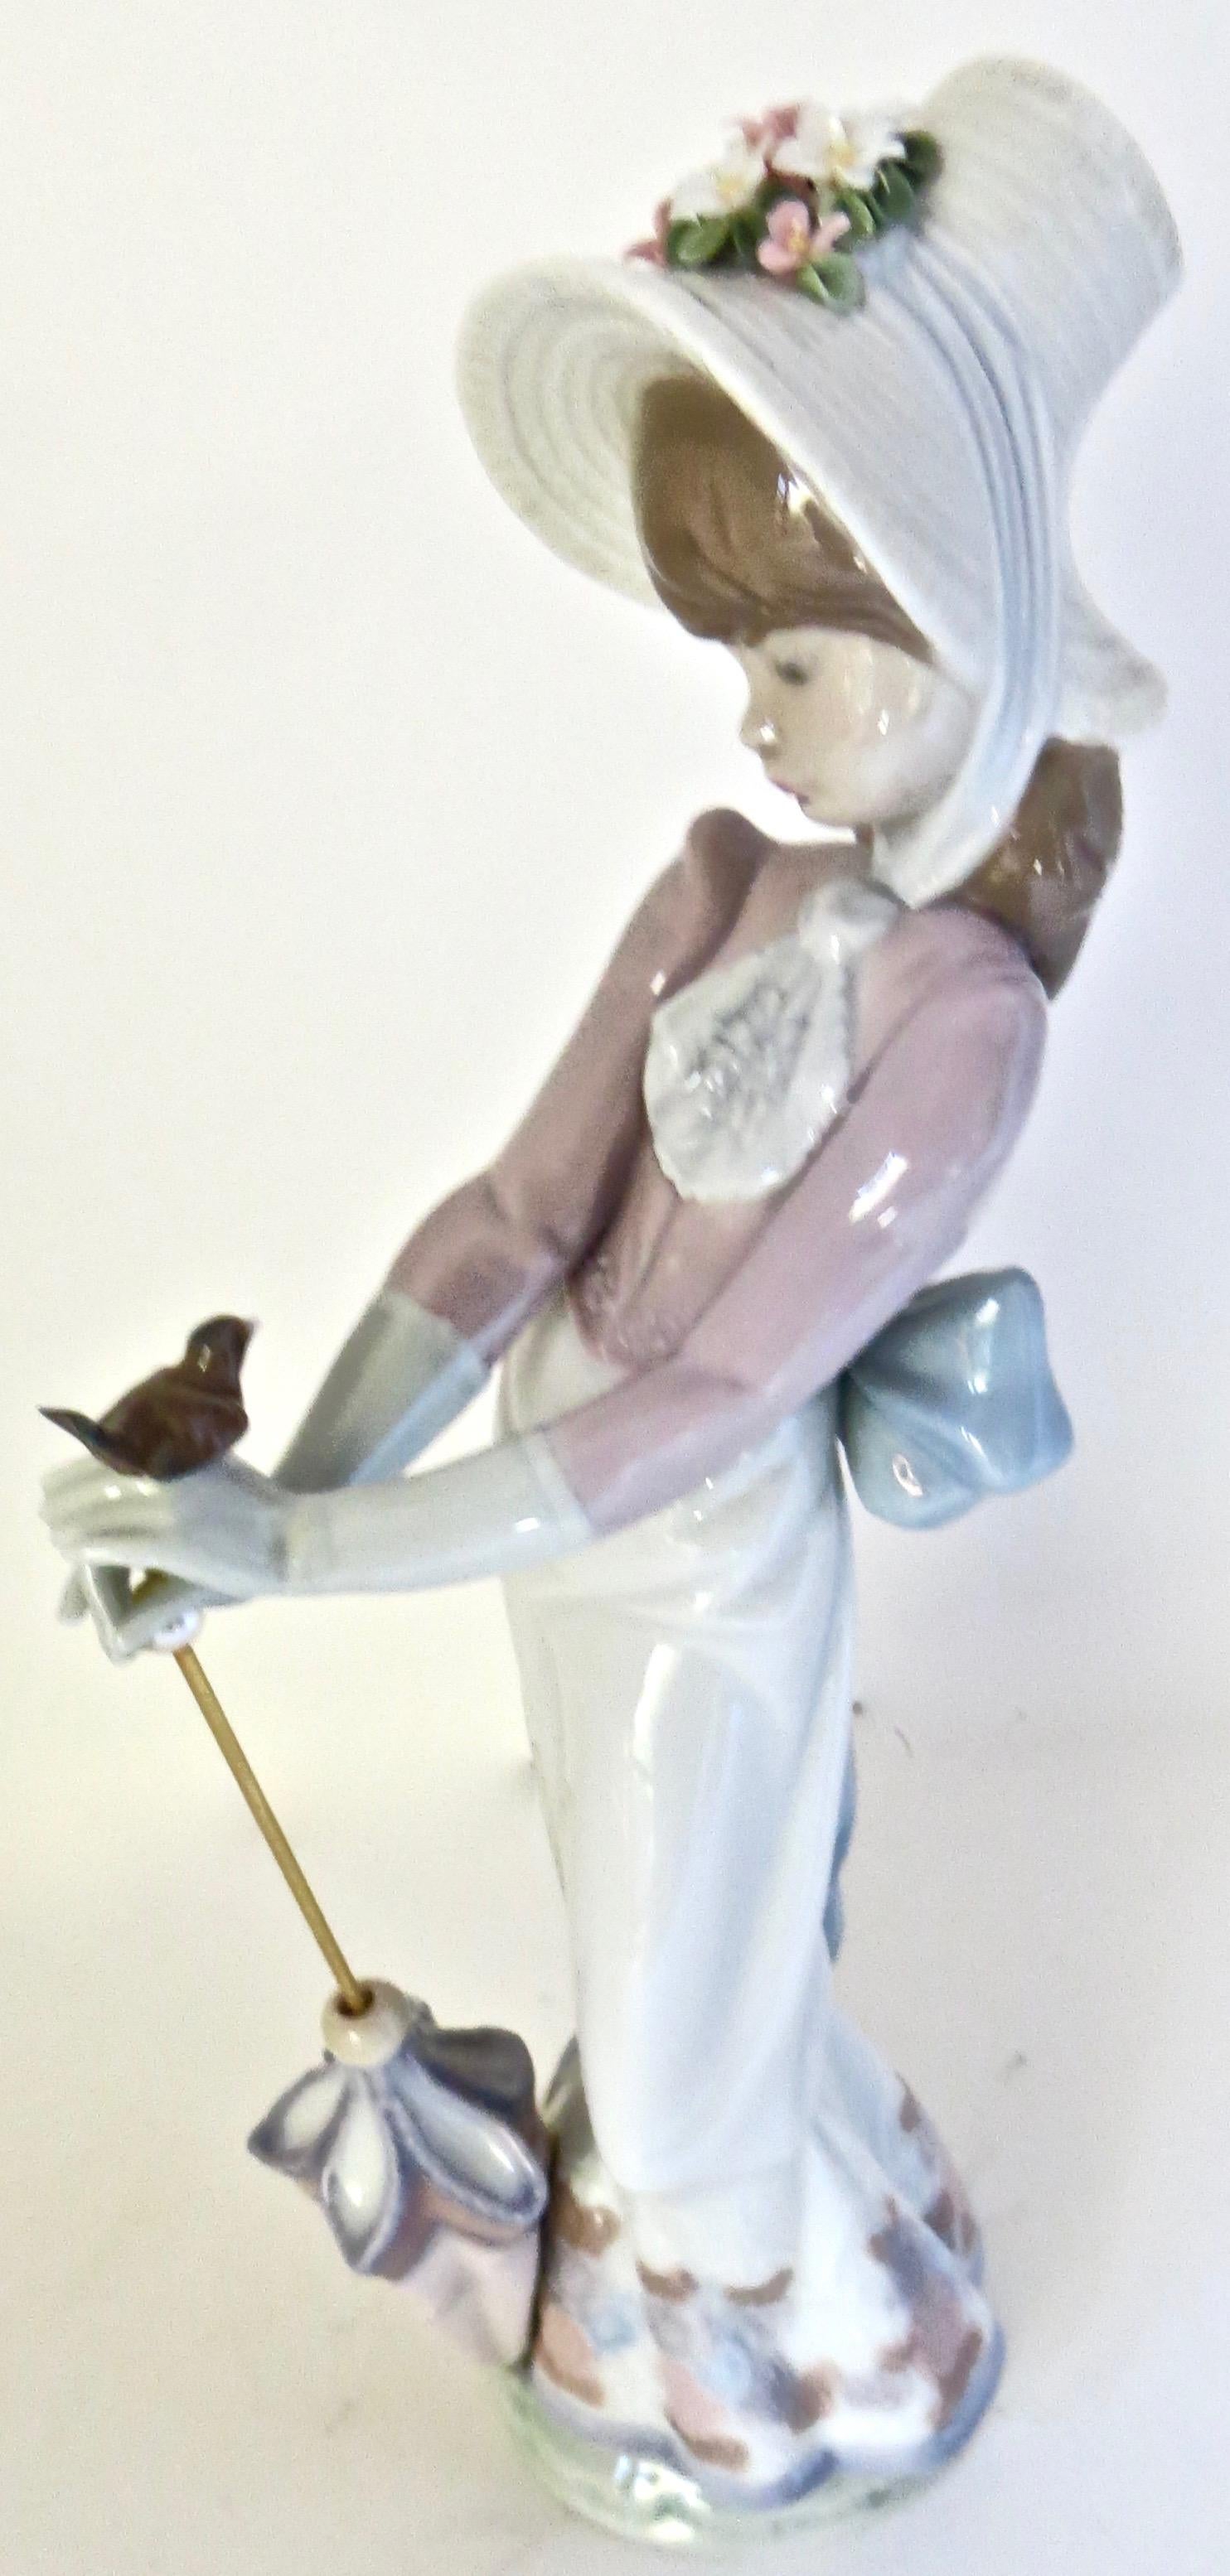 Diese handbemalte Porzellanfigur wurde 1992 in limitierter Auflage hergestellt und 1995 aus dem Verkehr gezogen. Sie wurde von Lladro in Spanien produziert. Sie wurde von dem weltbekannten Künstler Juan Huerta entworfen und geformt und trägt den